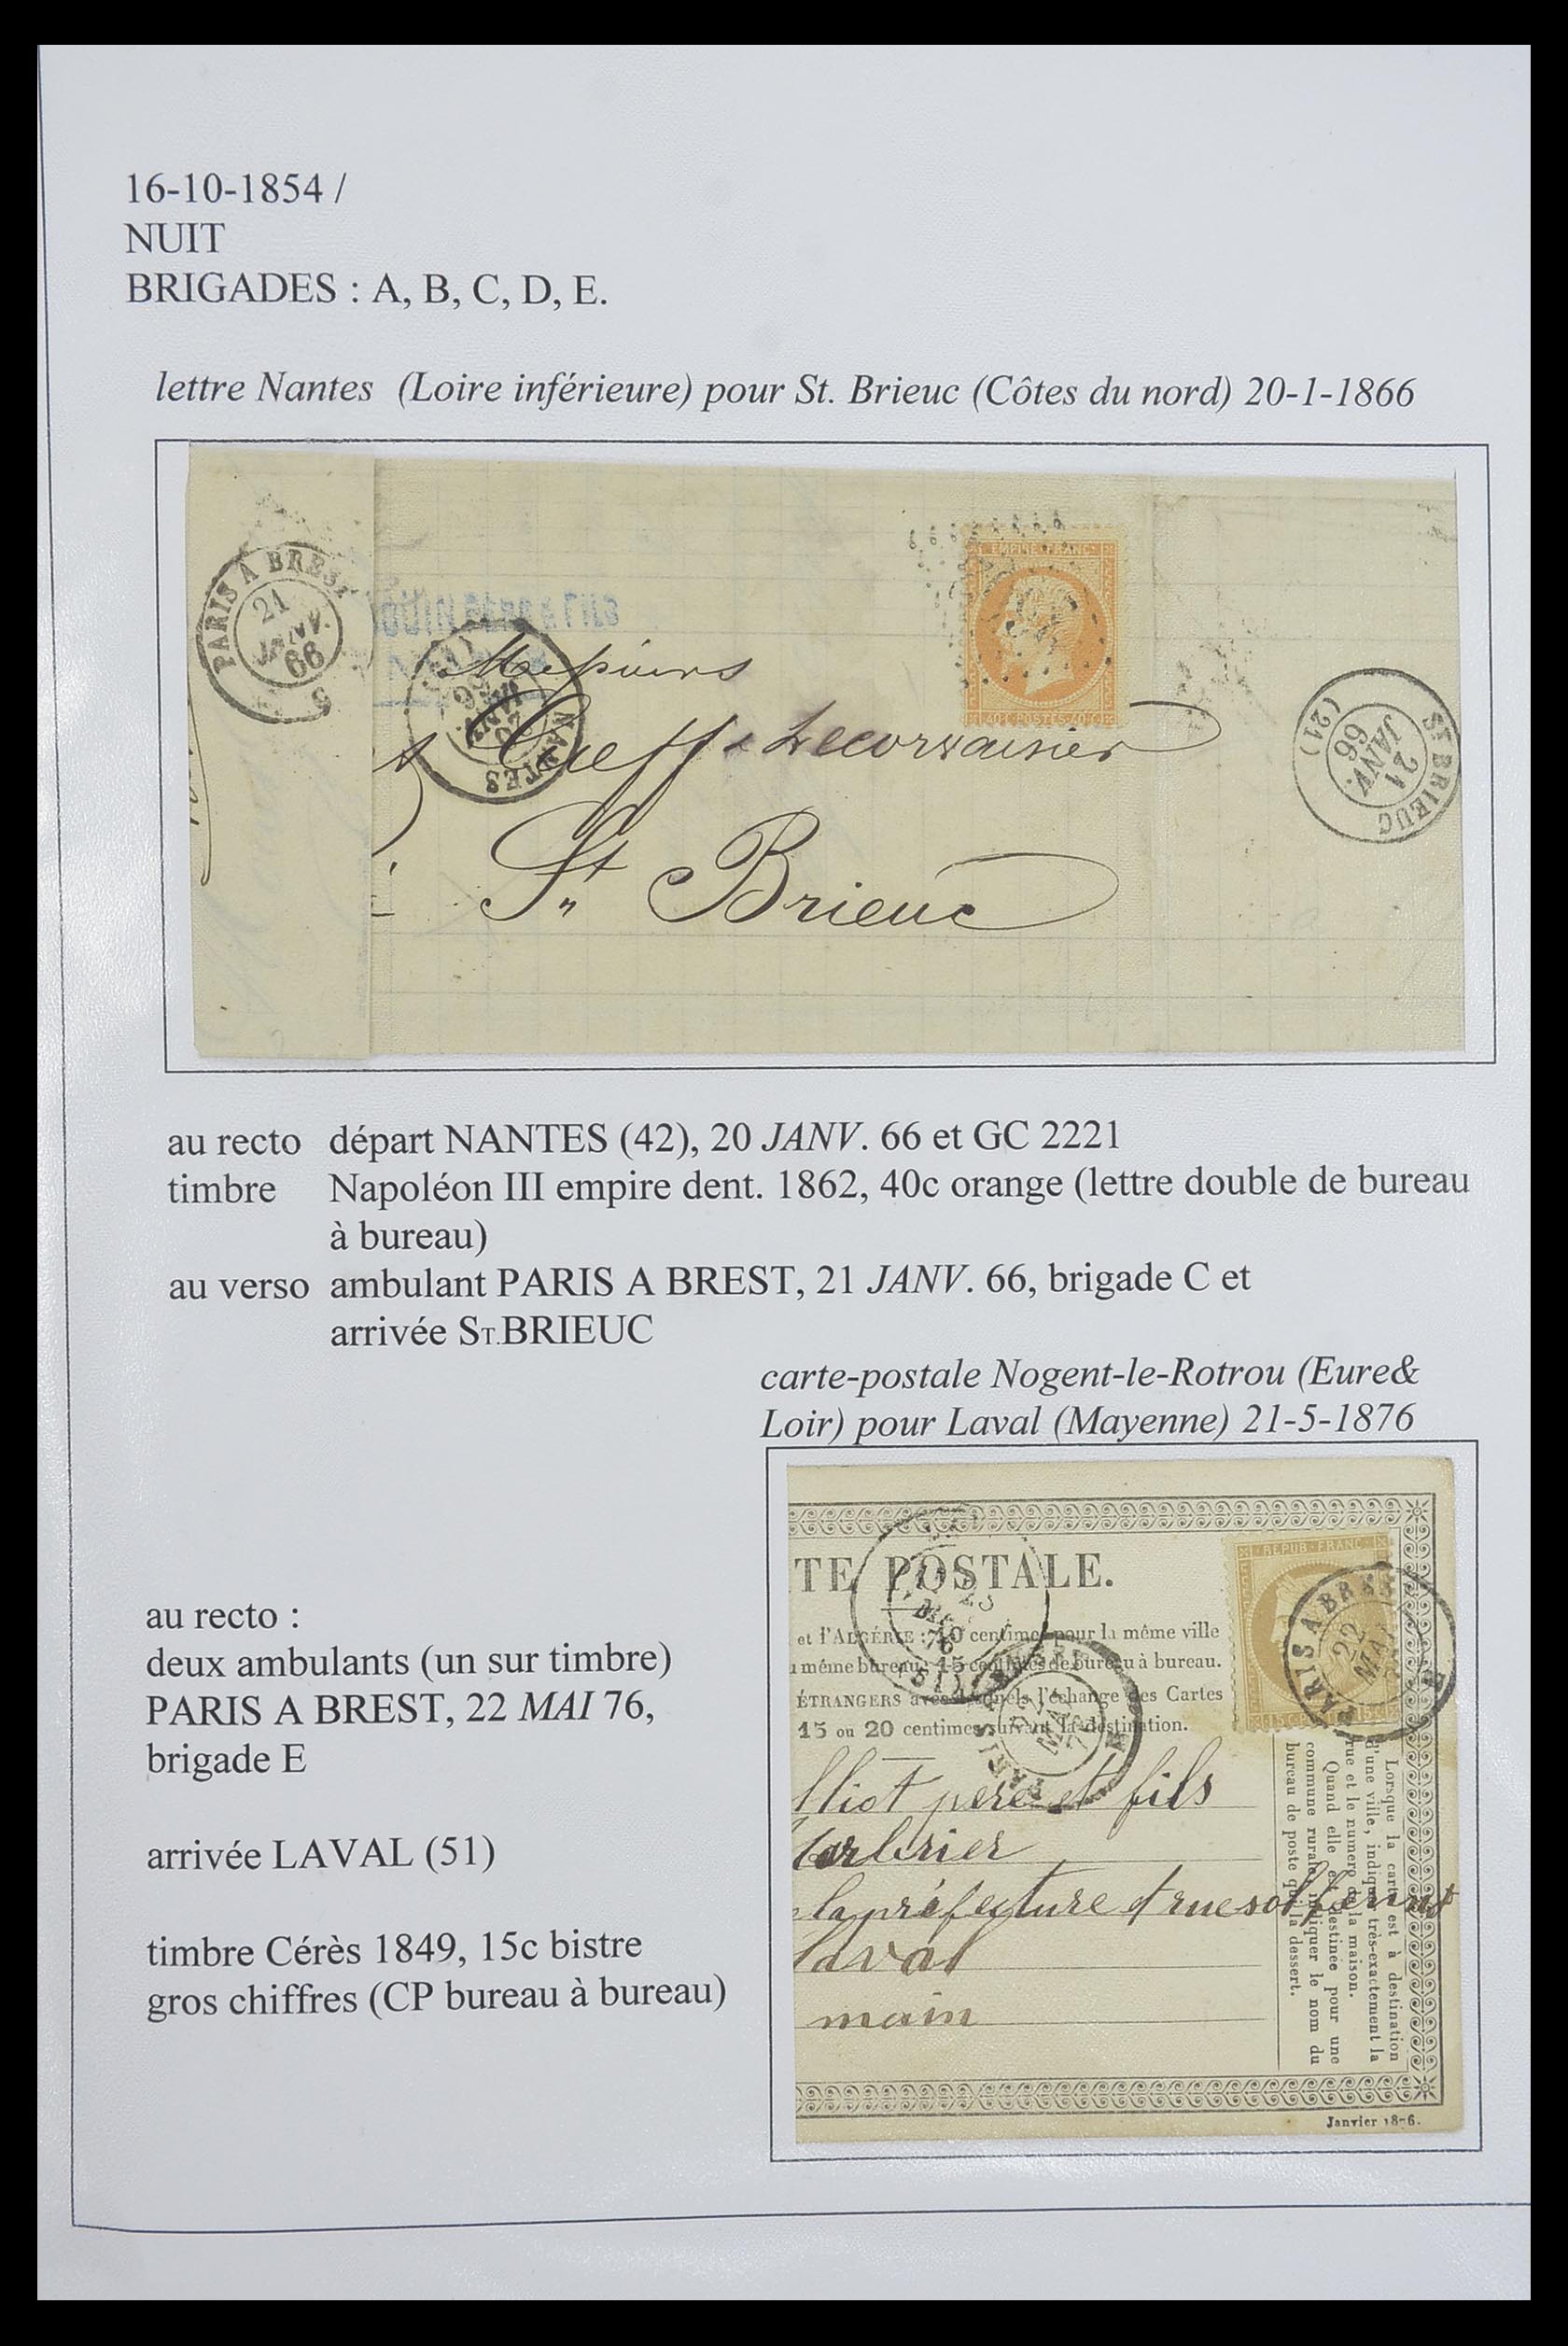 33624 100 - Postzegelverzameling 33624 Frankrijk brieven 1854-1907.